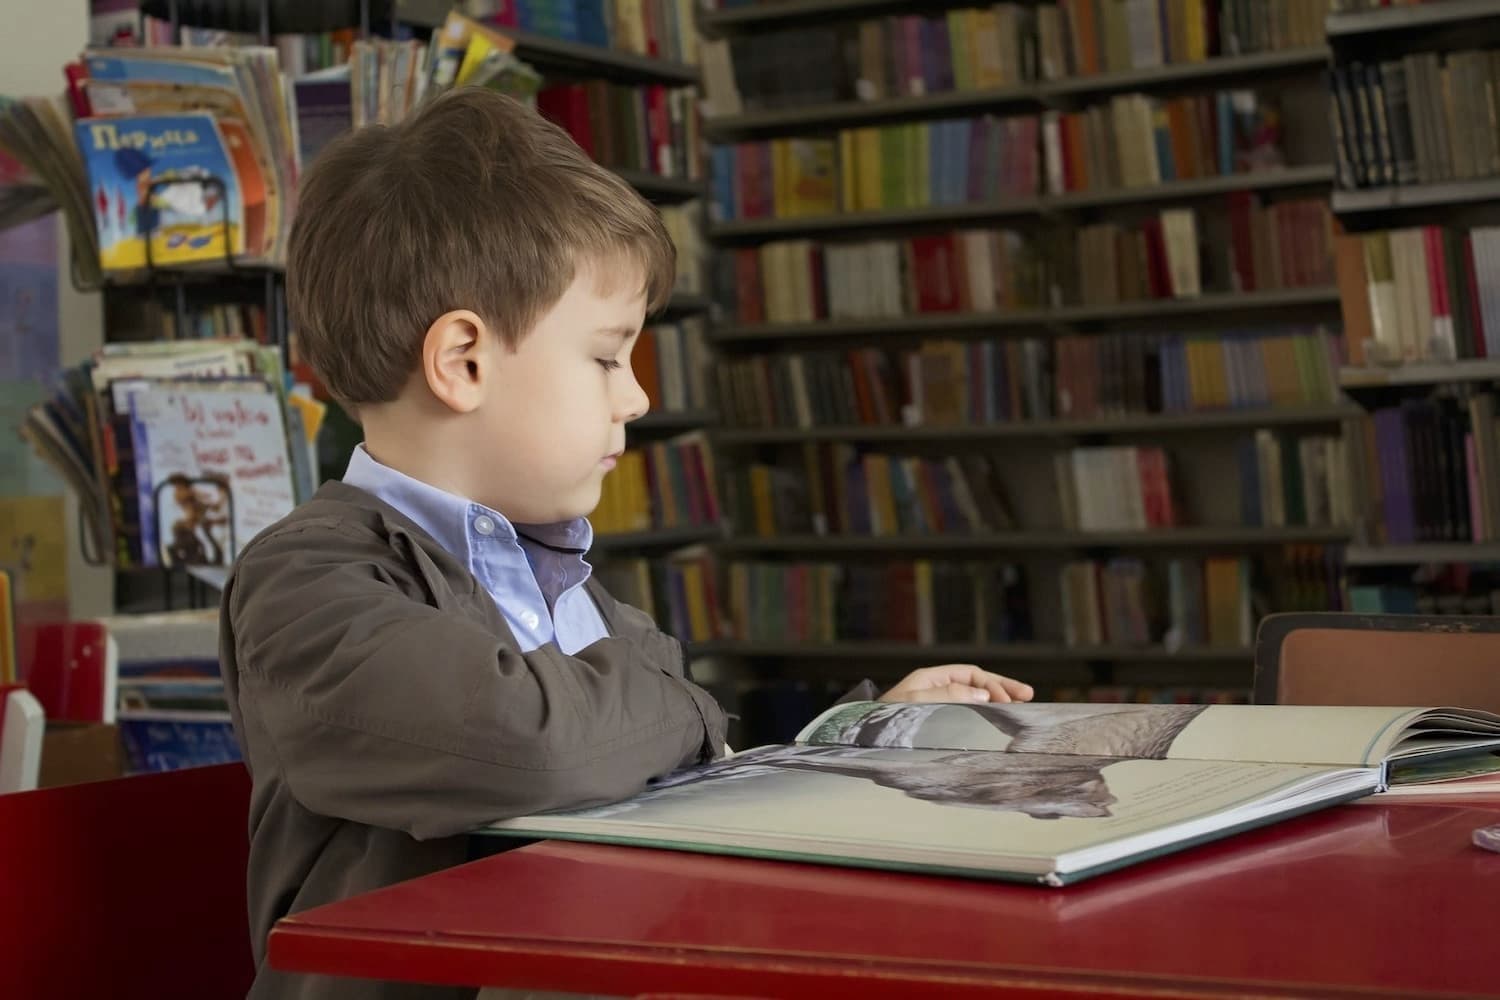 Video: Inspiring Children's Books